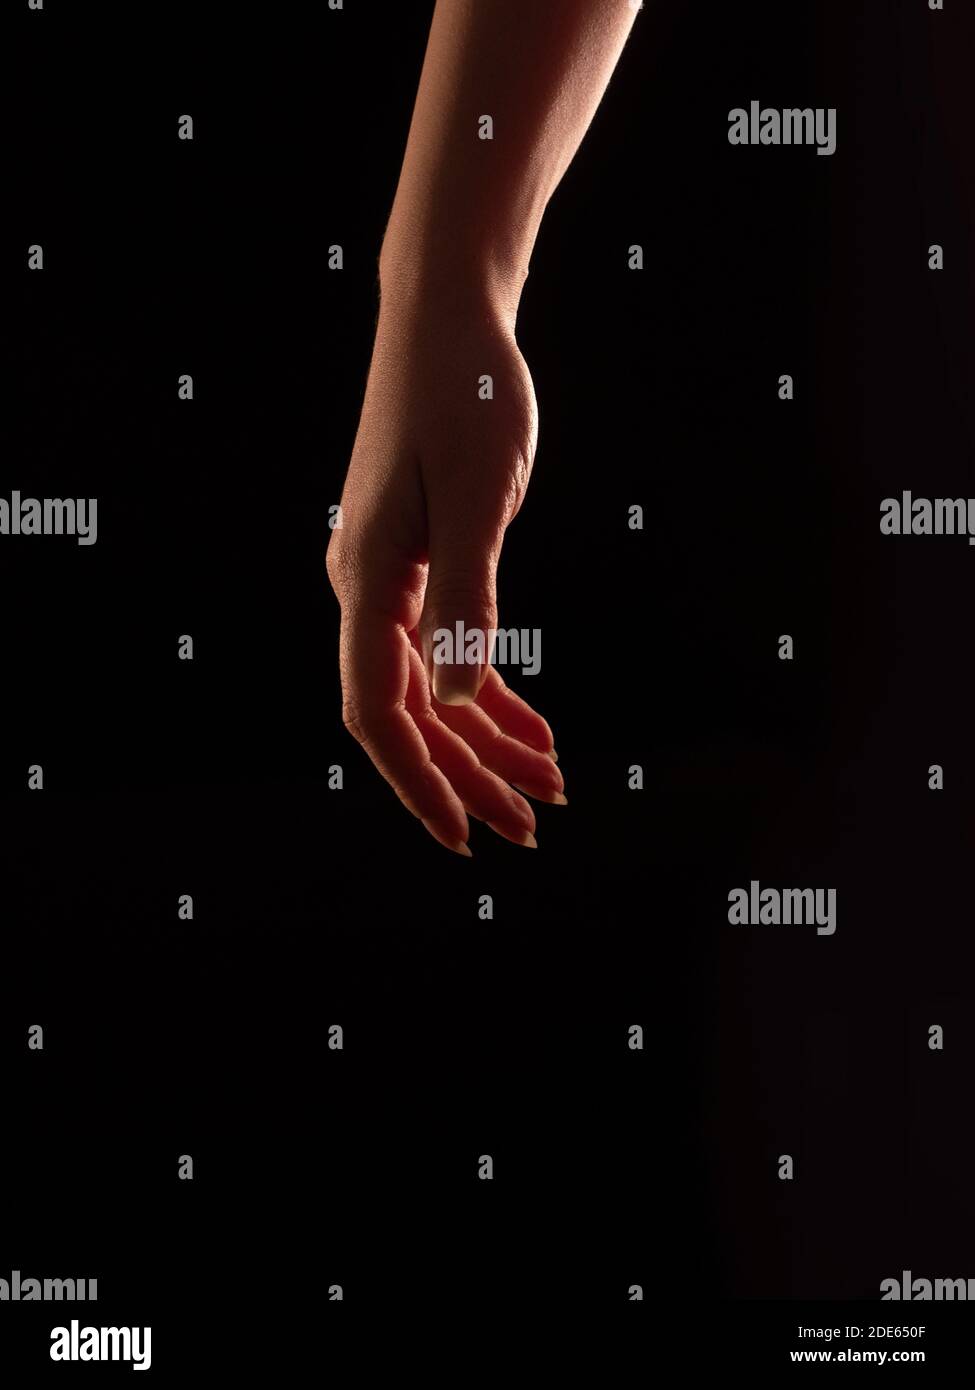 Schöne Frauenhand in Rim Light - entspannt Stockfoto